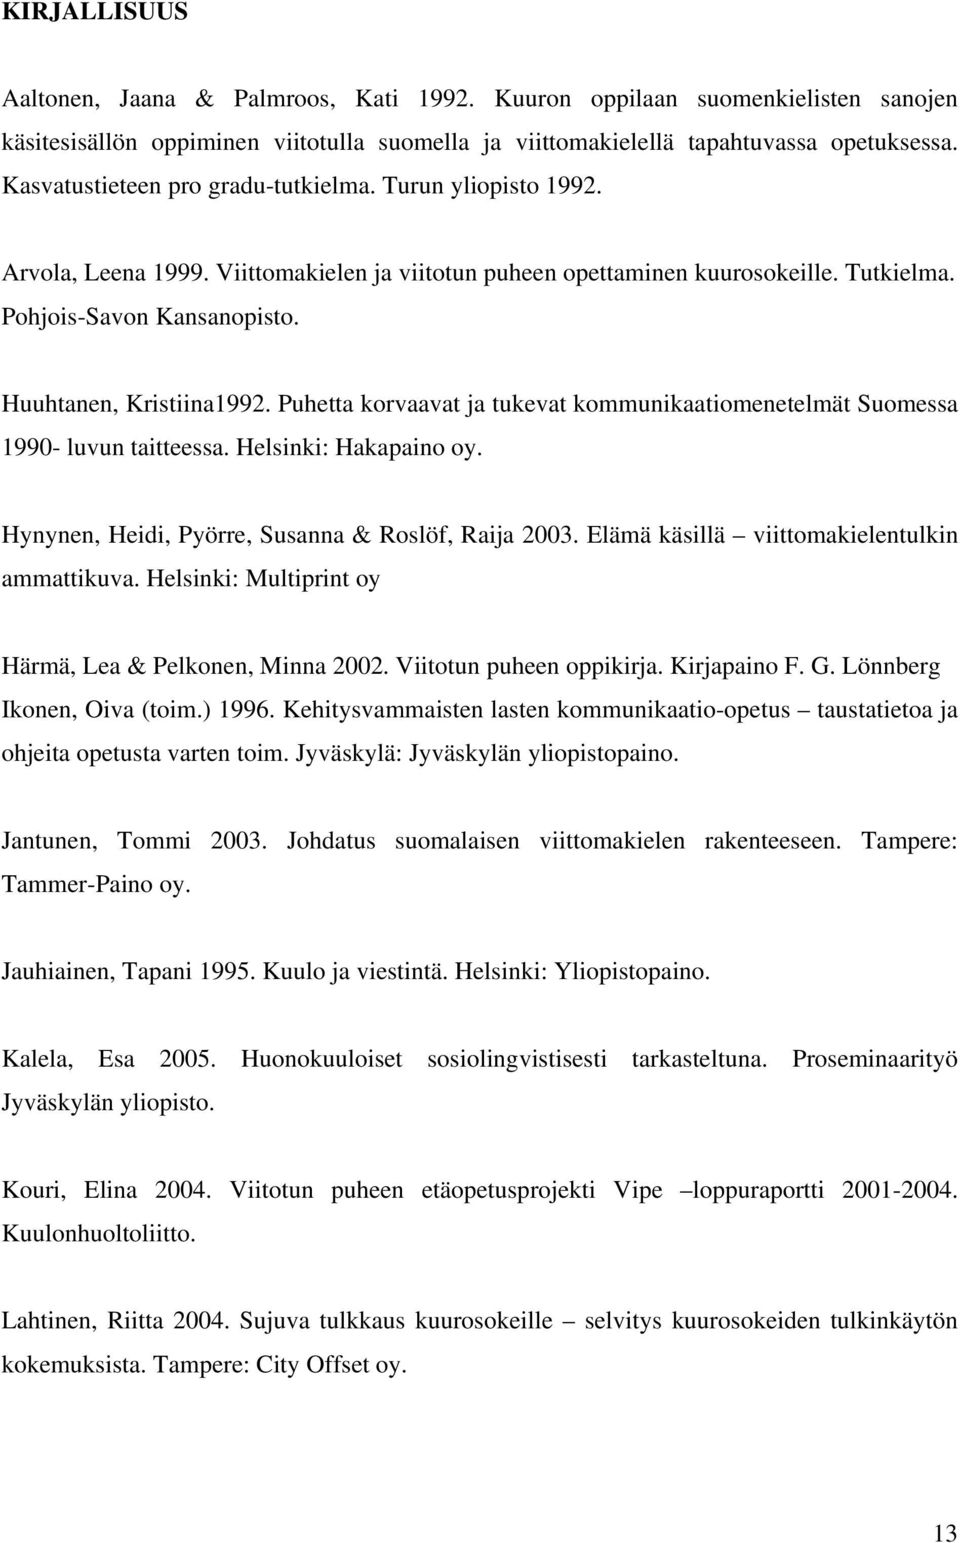 Huuhtanen, Kristiina1992. Puhetta korvaavat ja tukevat kommunikaatiomenetelmät Suomessa 1990- luvun taitteessa. Helsinki: Hakapaino oy. Hynynen, Heidi, Pyörre, Susanna & Roslöf, Raija 2003.